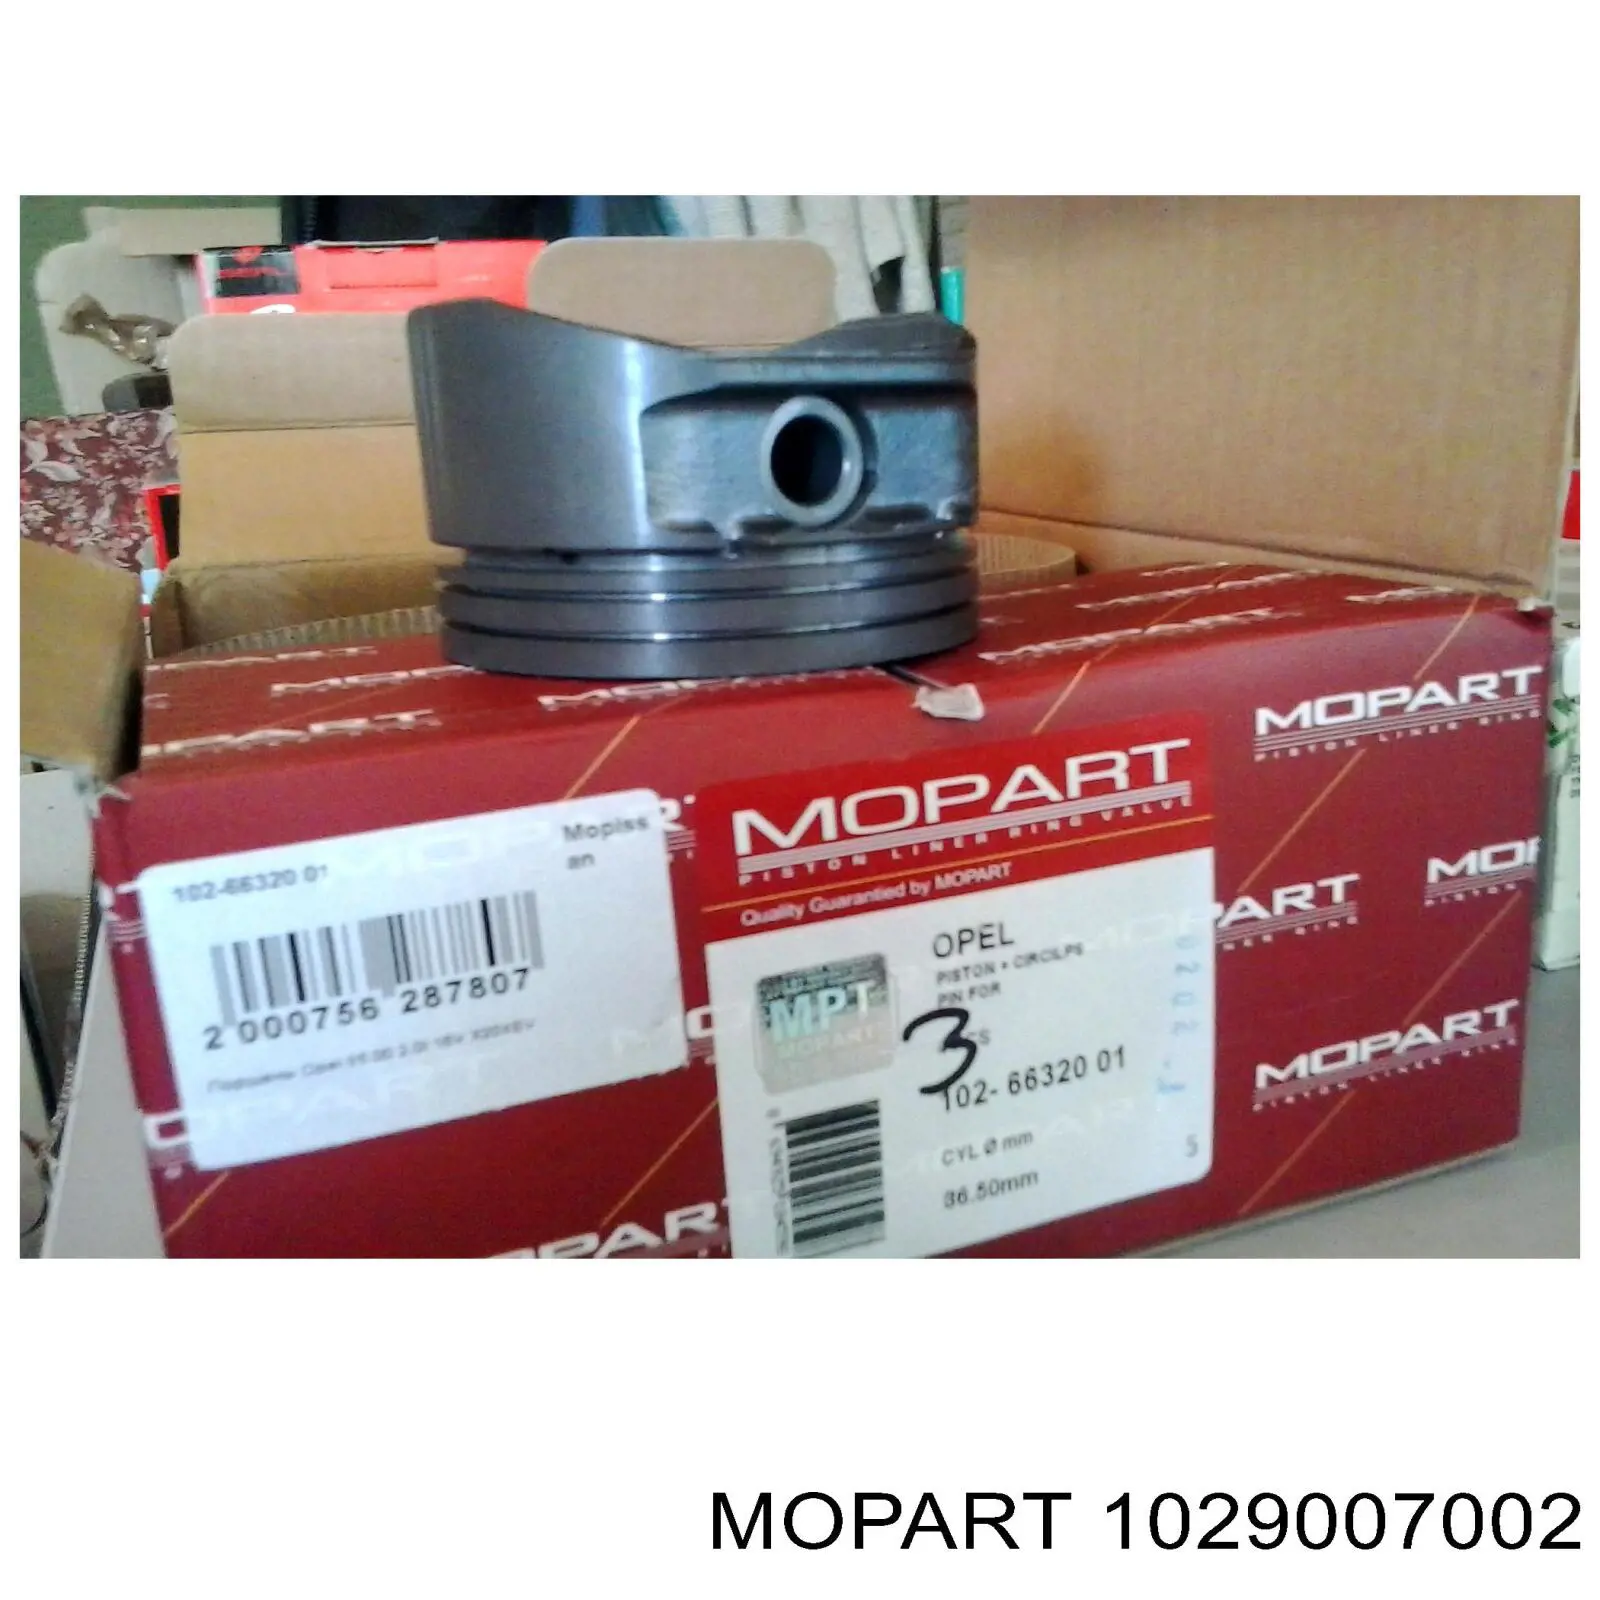 1029007002 Mopart поршень в комплекте на 1 цилиндр, 4-й ремонт (+1,00)